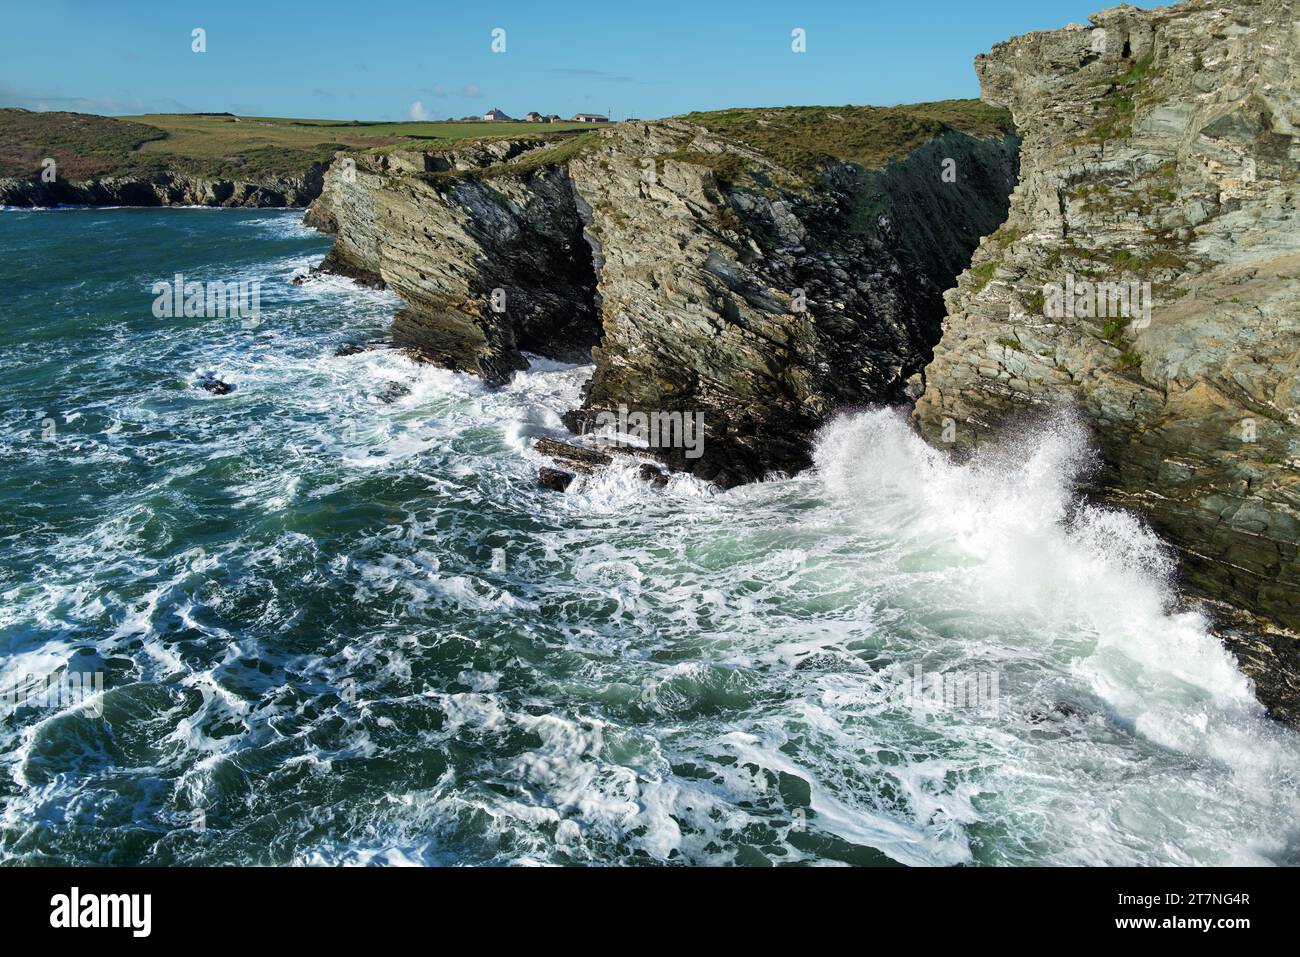 Mers sauvages sur la côte de l'île Sainte juste à l'ouest de Porth Dafarch dans le nord du pays de Galles. Le site est situé entre Trearddur Bay et Holyhead. Banque D'Images